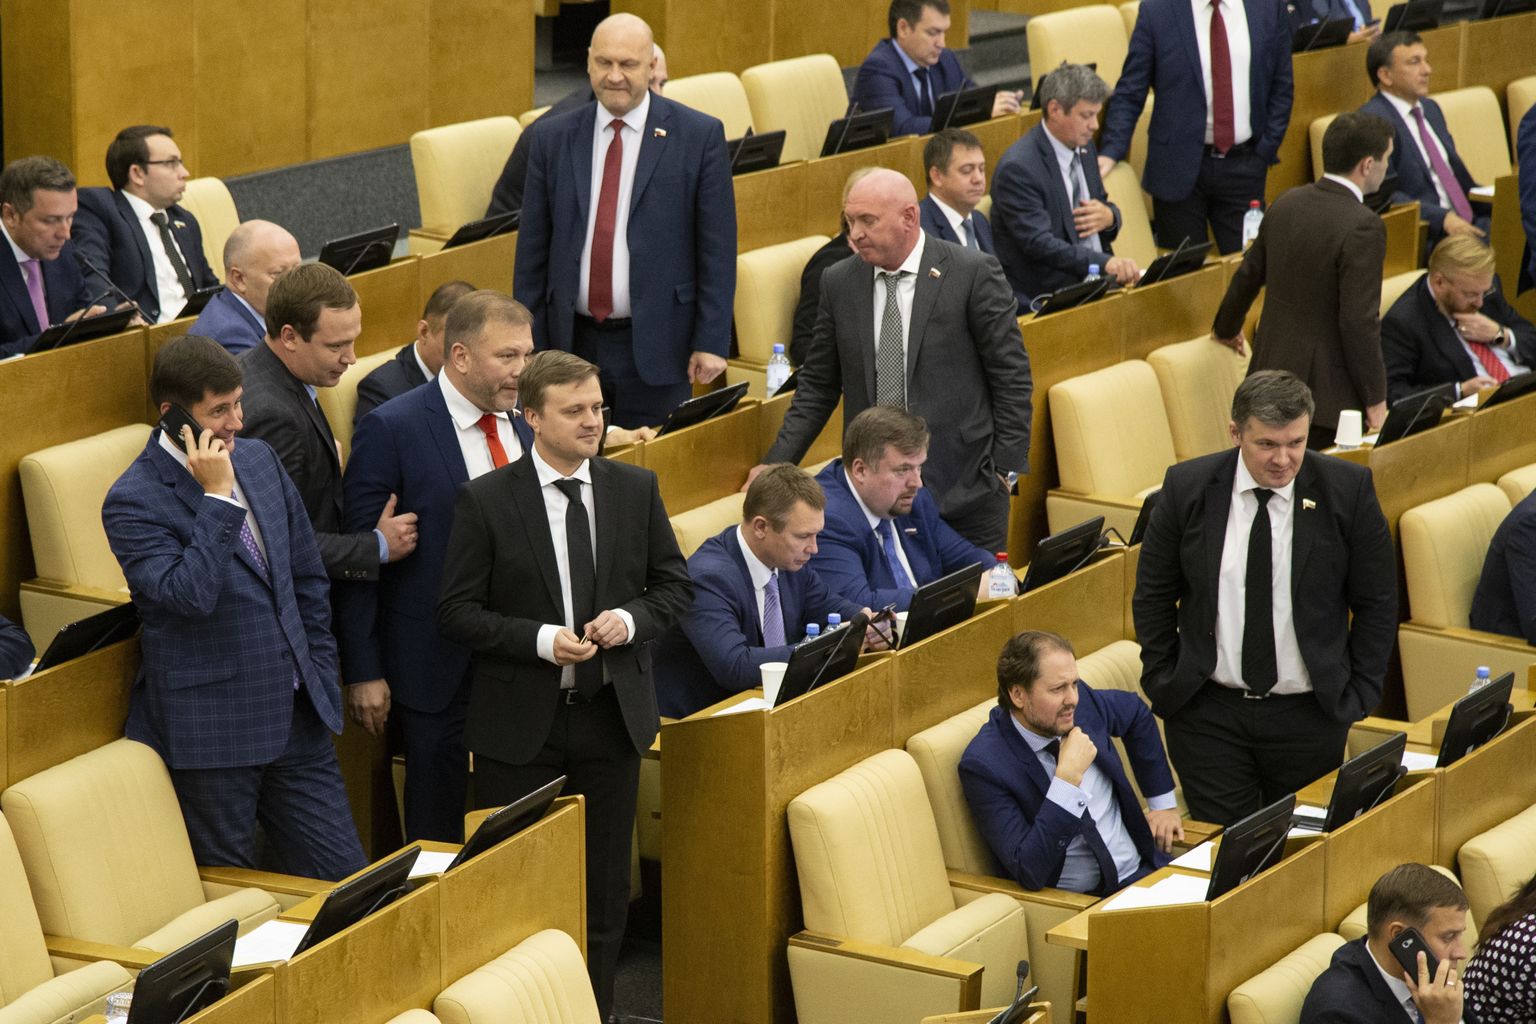 Vene riigiduuma otsustas veebilehel avaldada kõik parlamendisaadikute rumalad väljaütlemised.